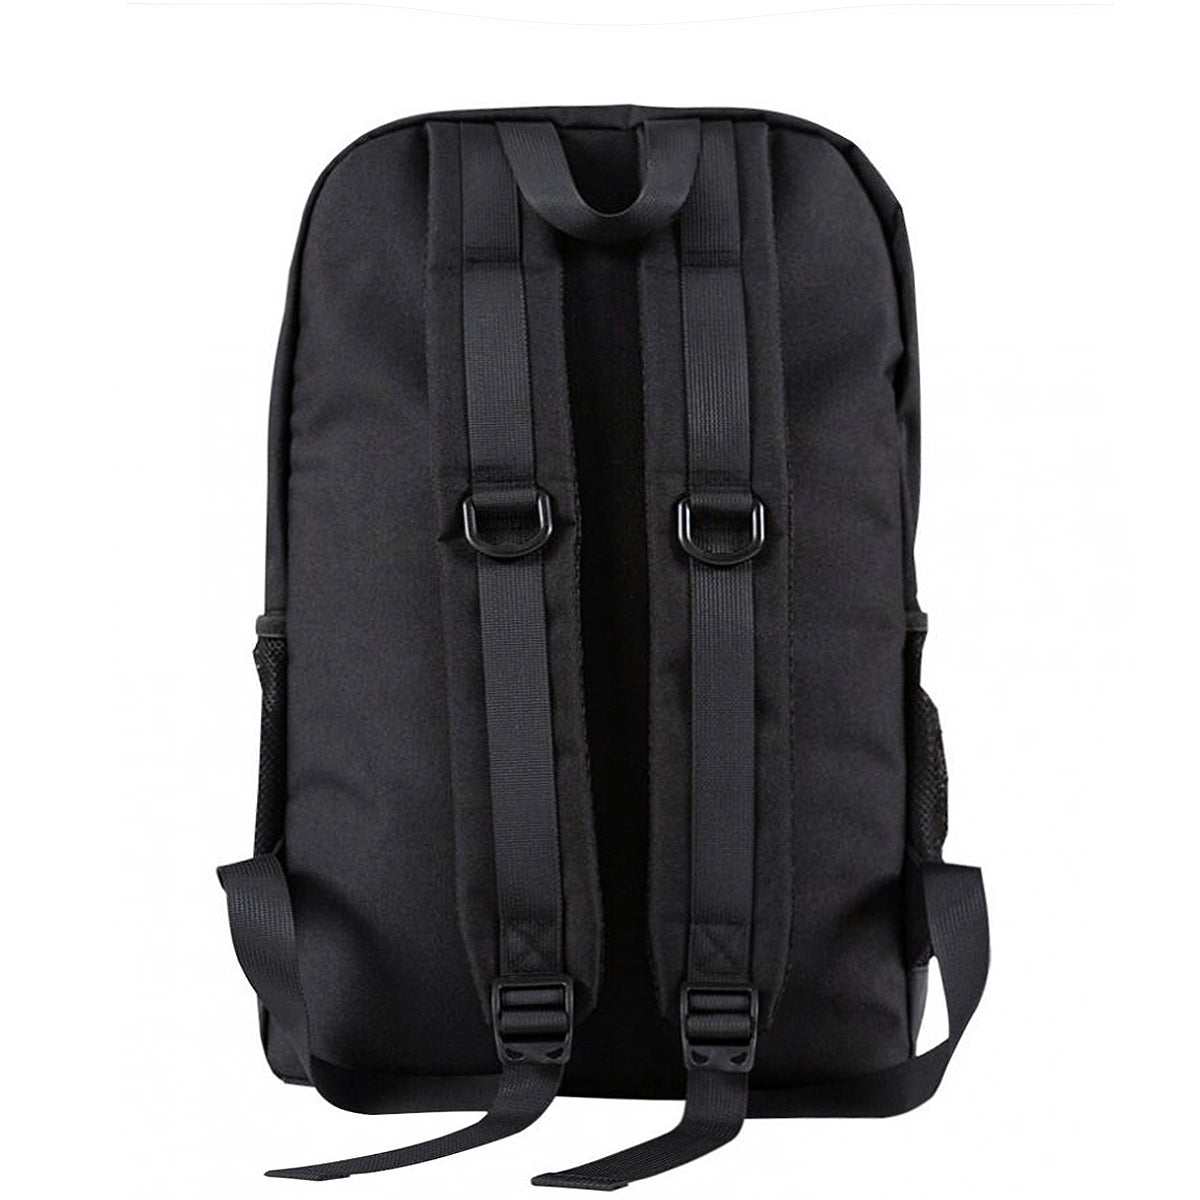 Spitfire Road Dog Backpack - Black - Prime Delux Store